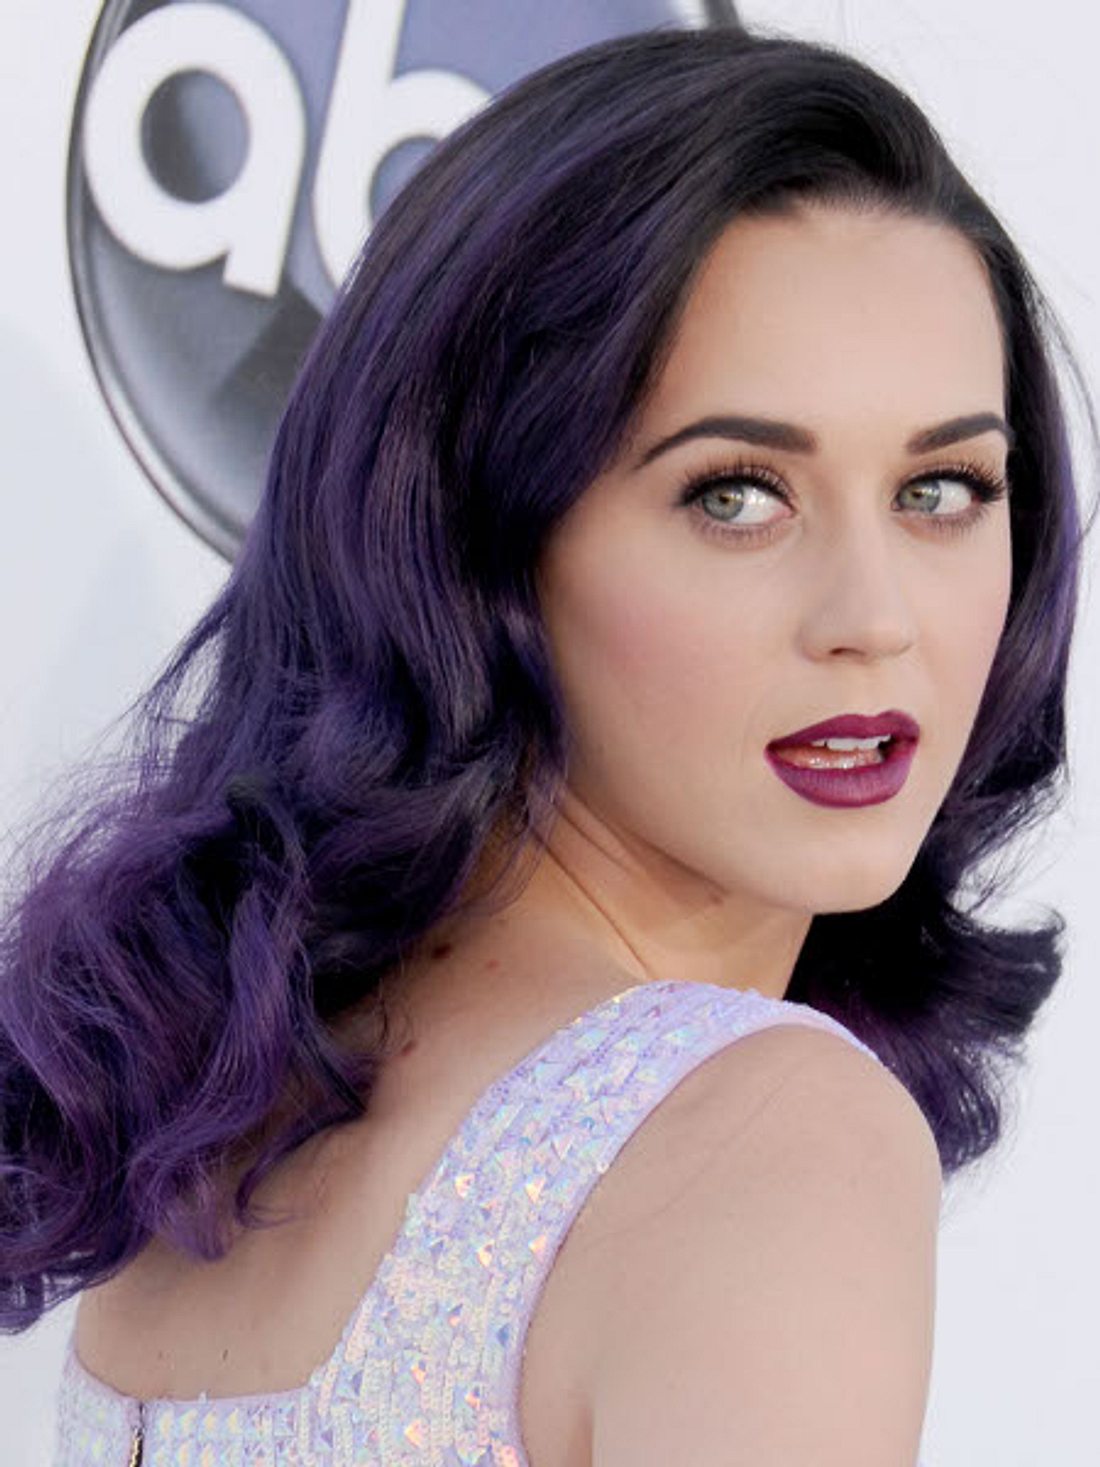 Die missglückten Frisuren der StarsDass Katy Perry (27) in Sachen Frisur Mut zur Lücke beweist, wissen wir. Tönungen in allen Regenbogenfarben sind wir von der Sängerin ja schon gewöhnt.,